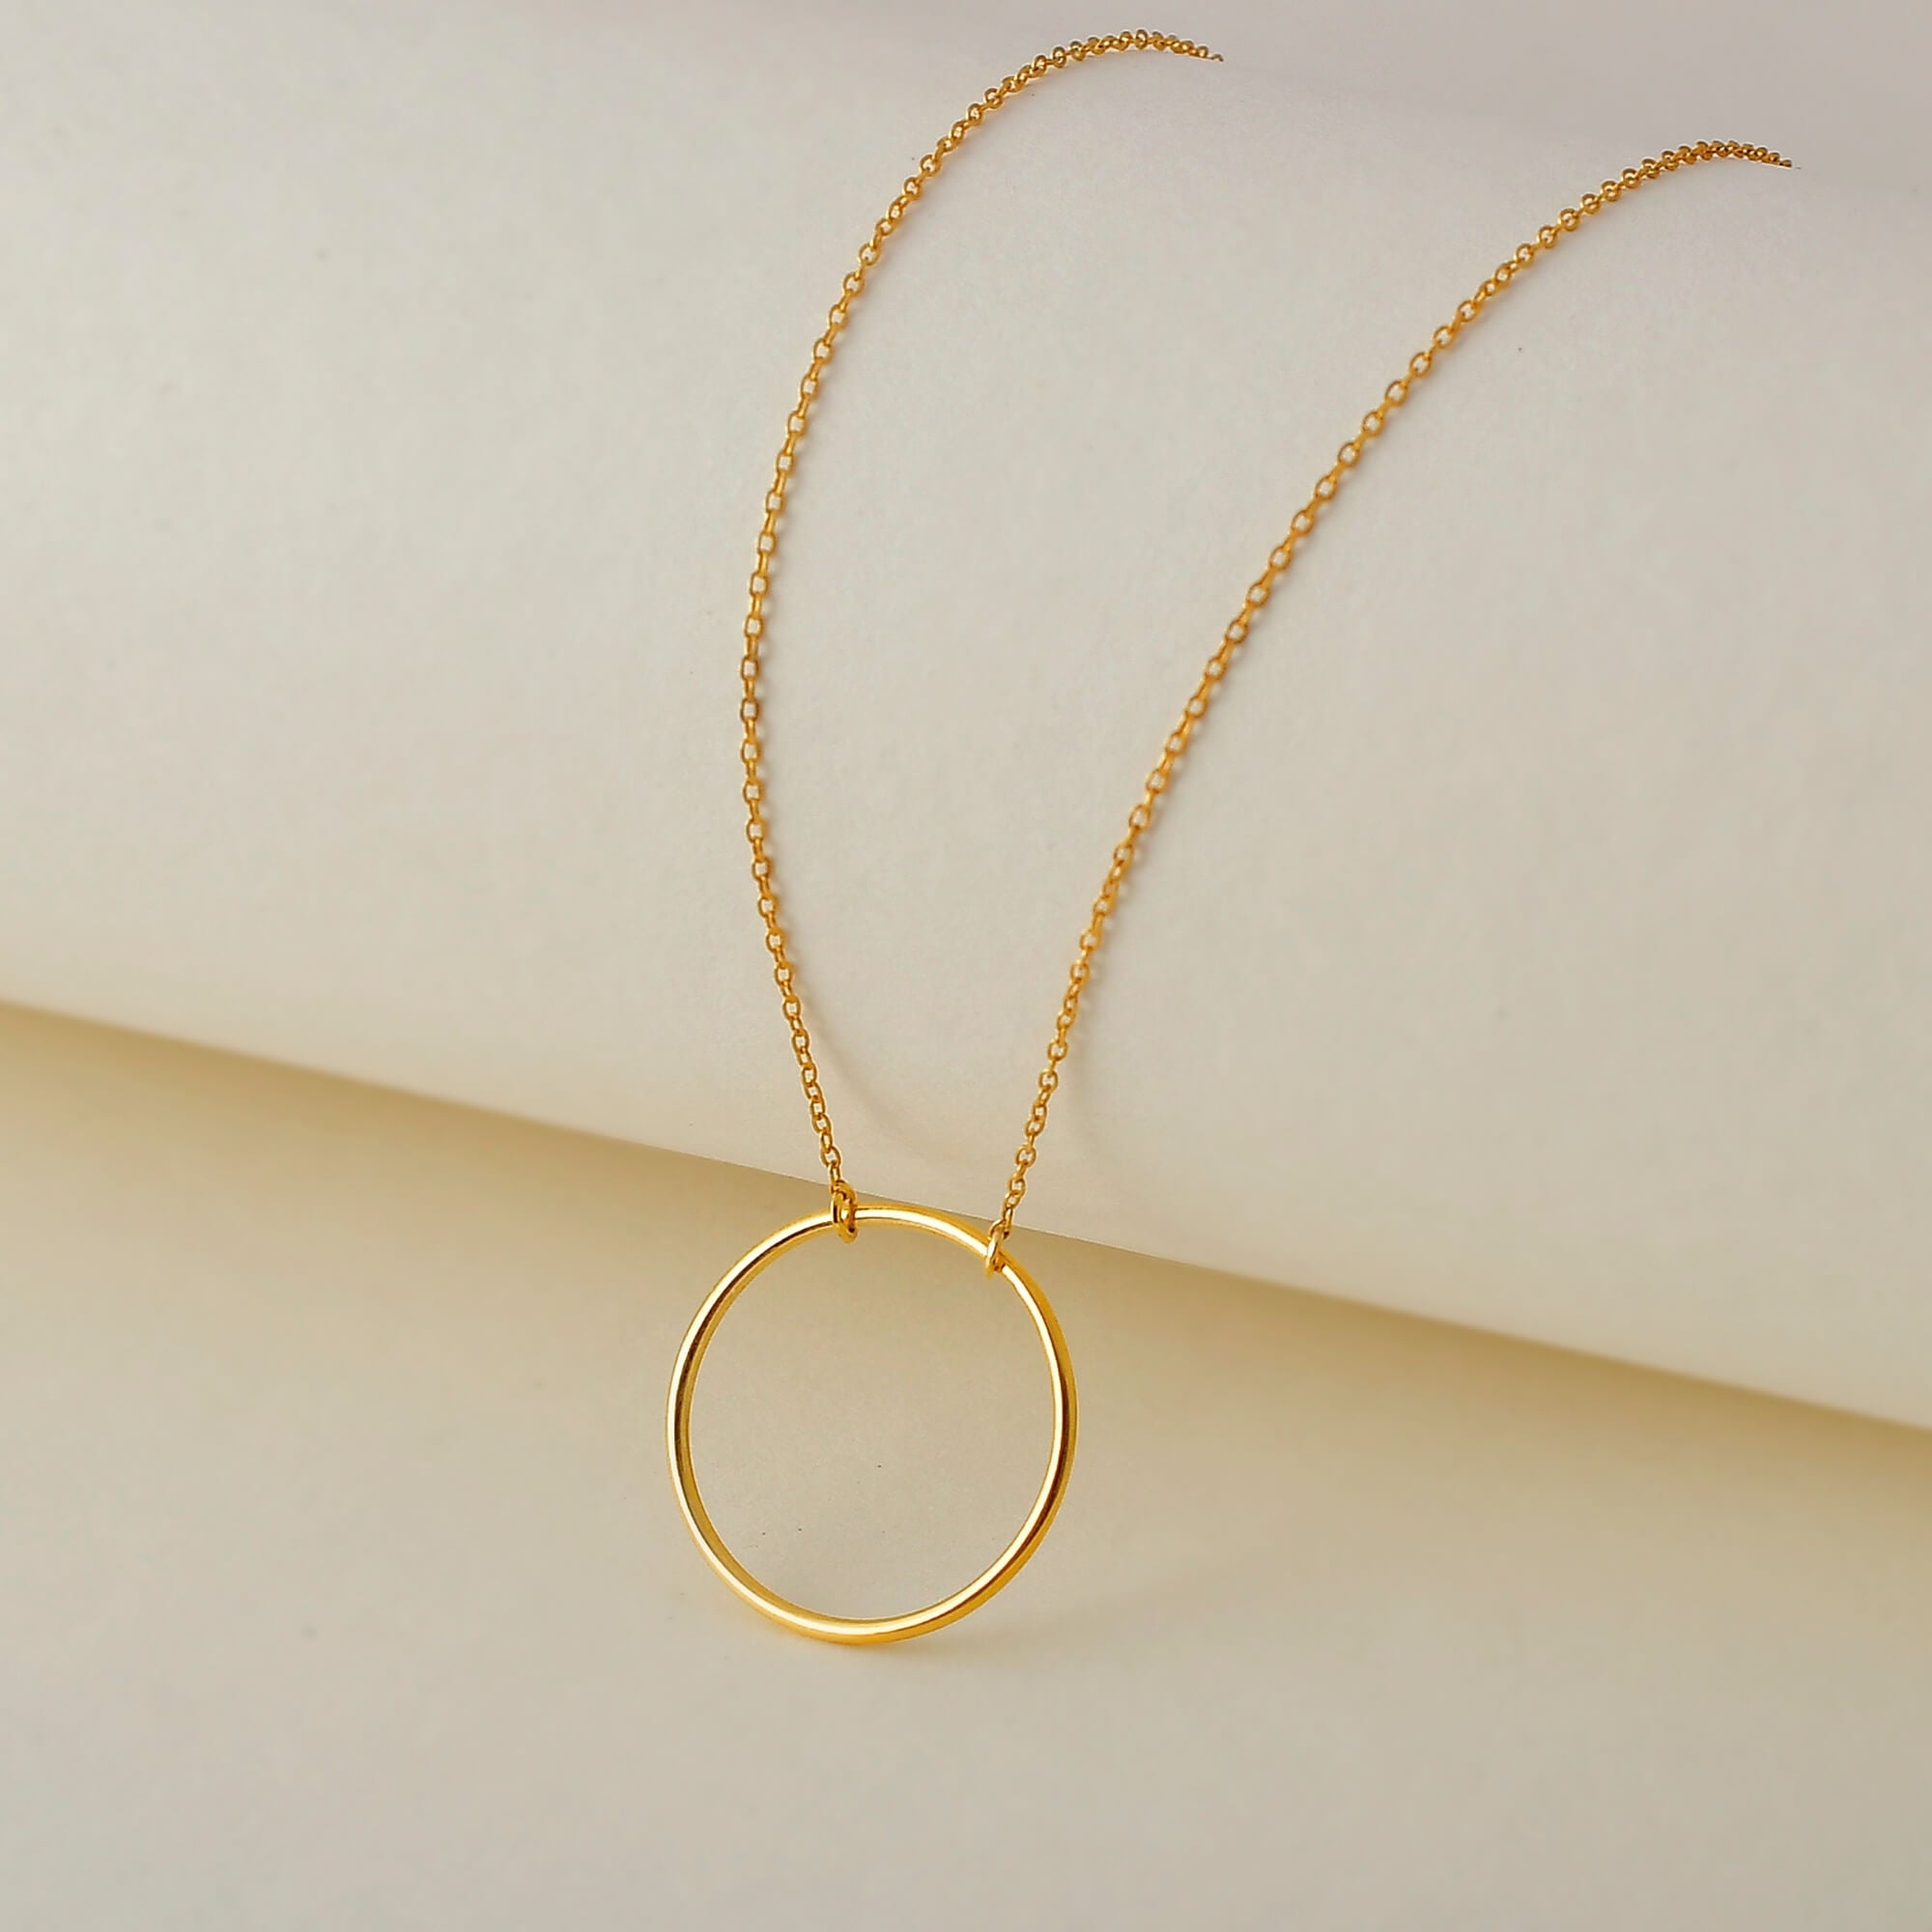 Linda Circle Pendant Necklace in 18k Rose Gold Plating - MYKA